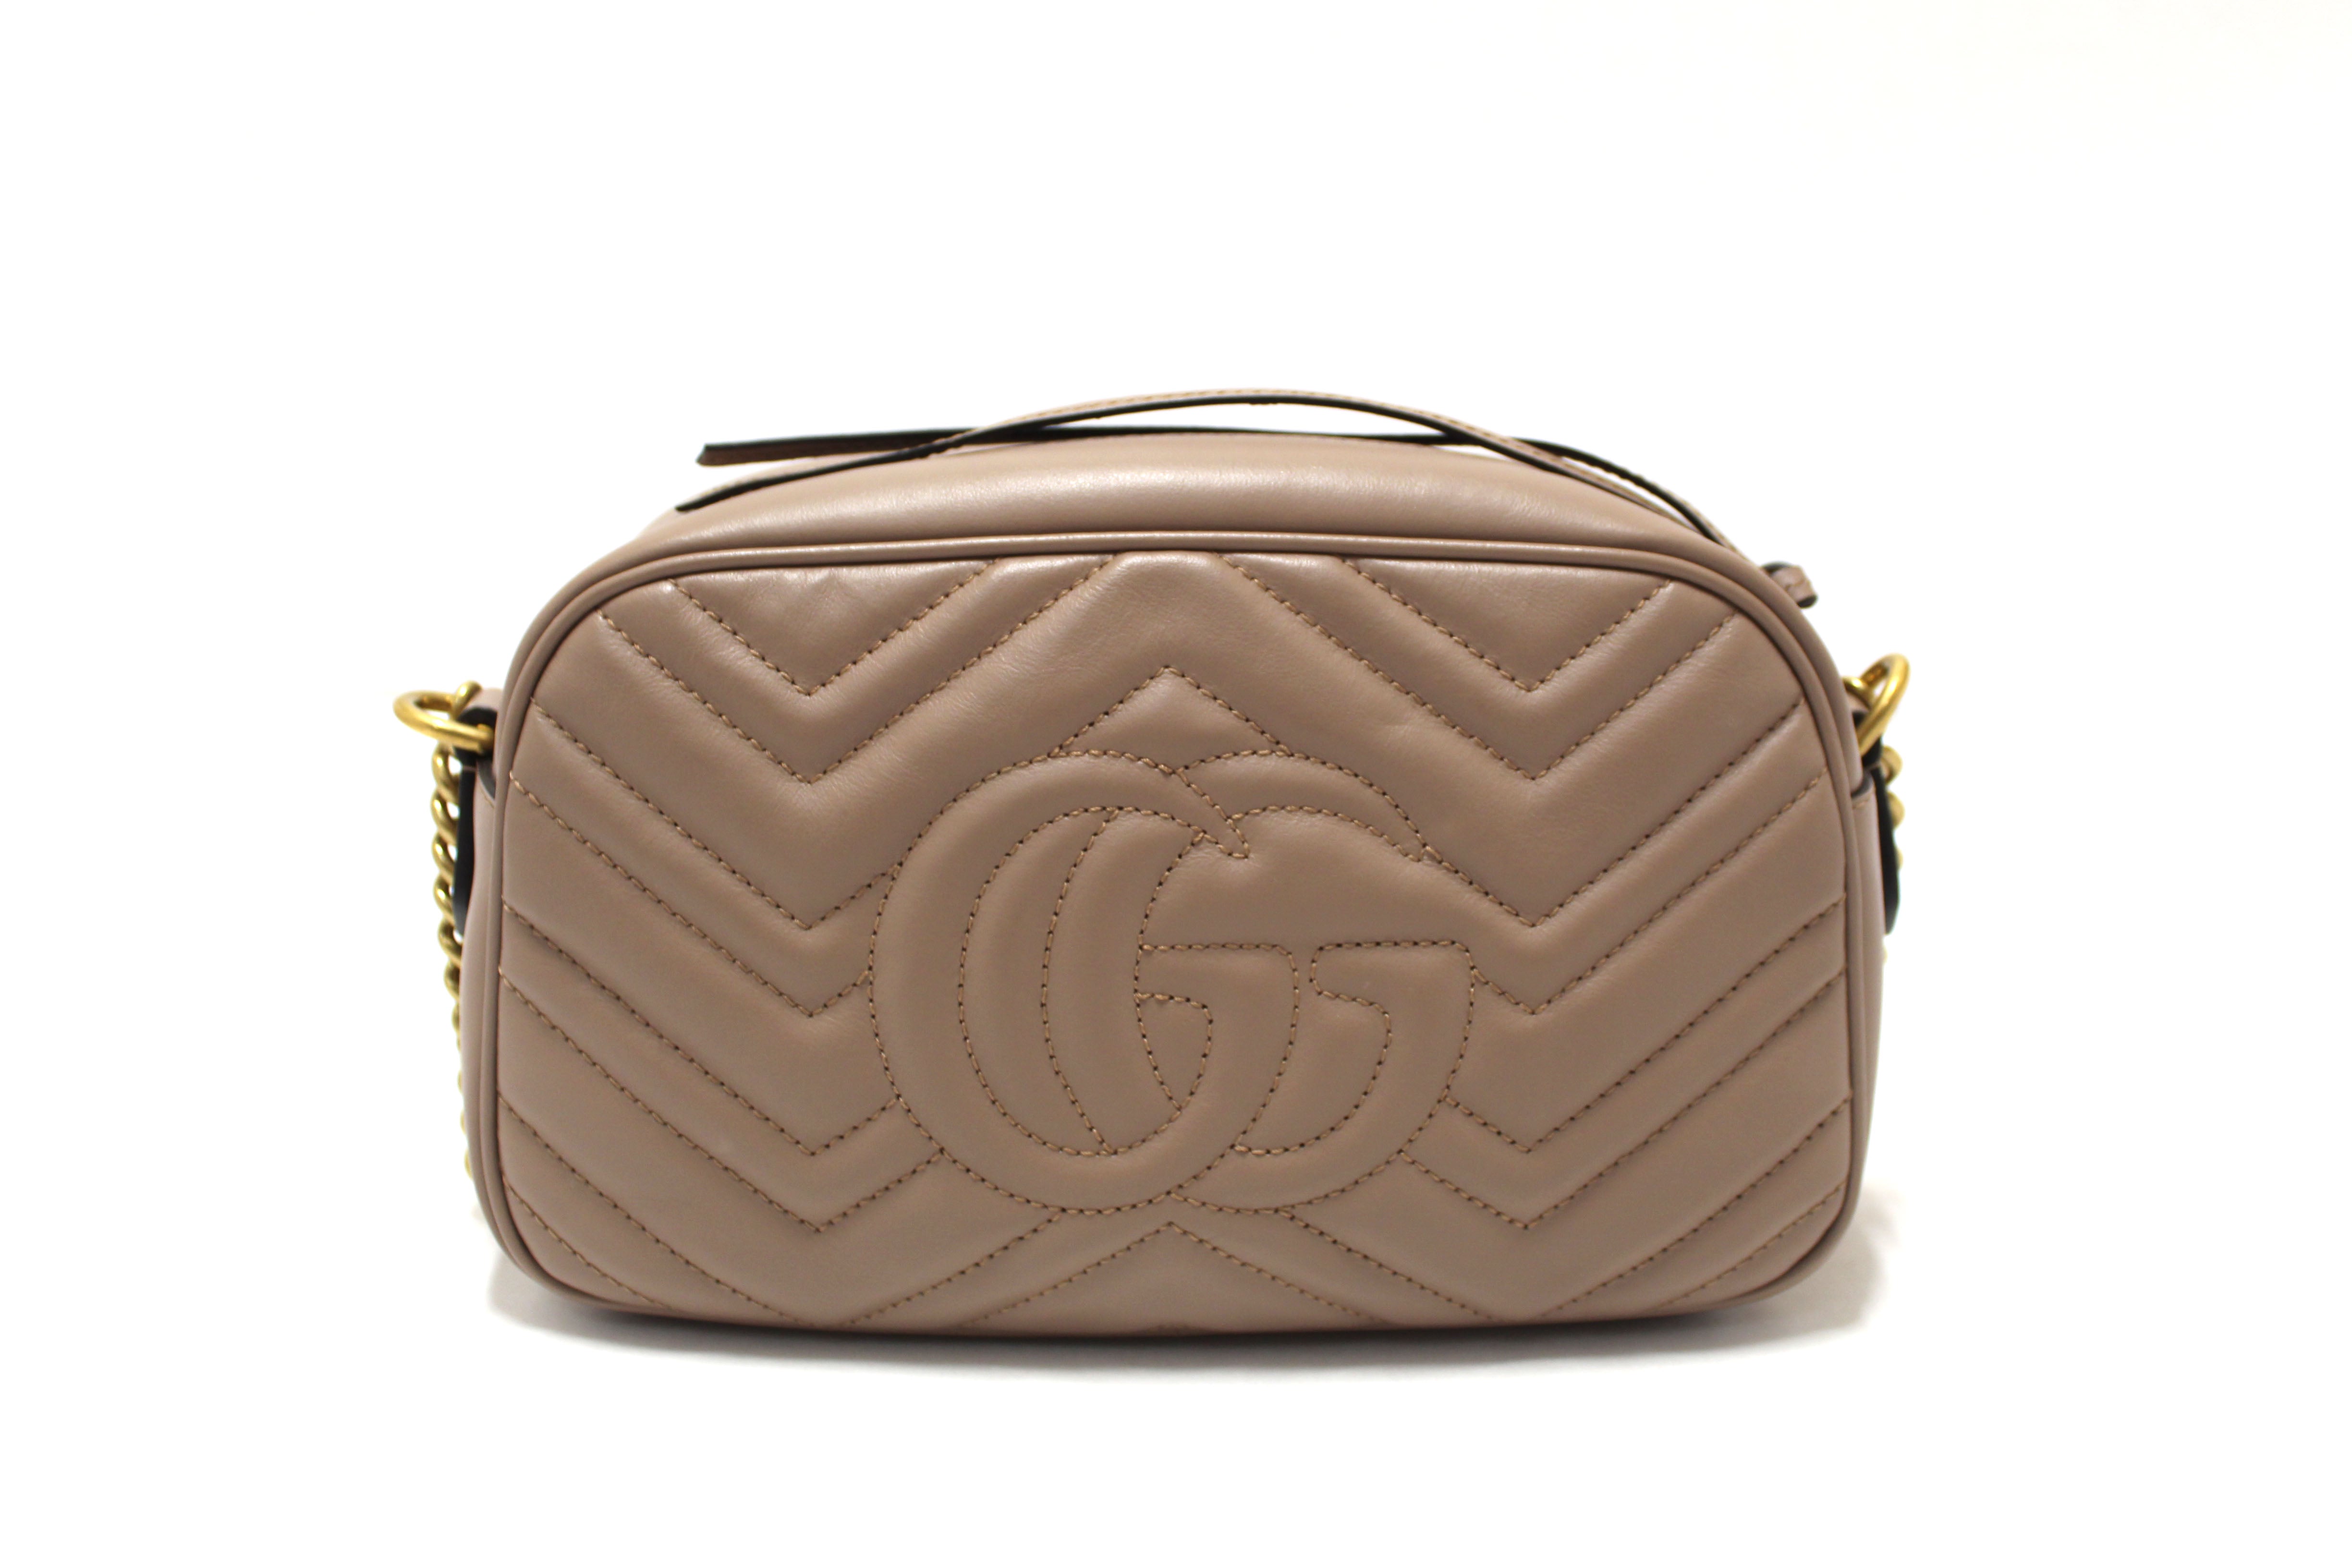 Authentic Gucci Porcelain Rose Marmont Matelassé Chevron Leather Small Shoulder Bag